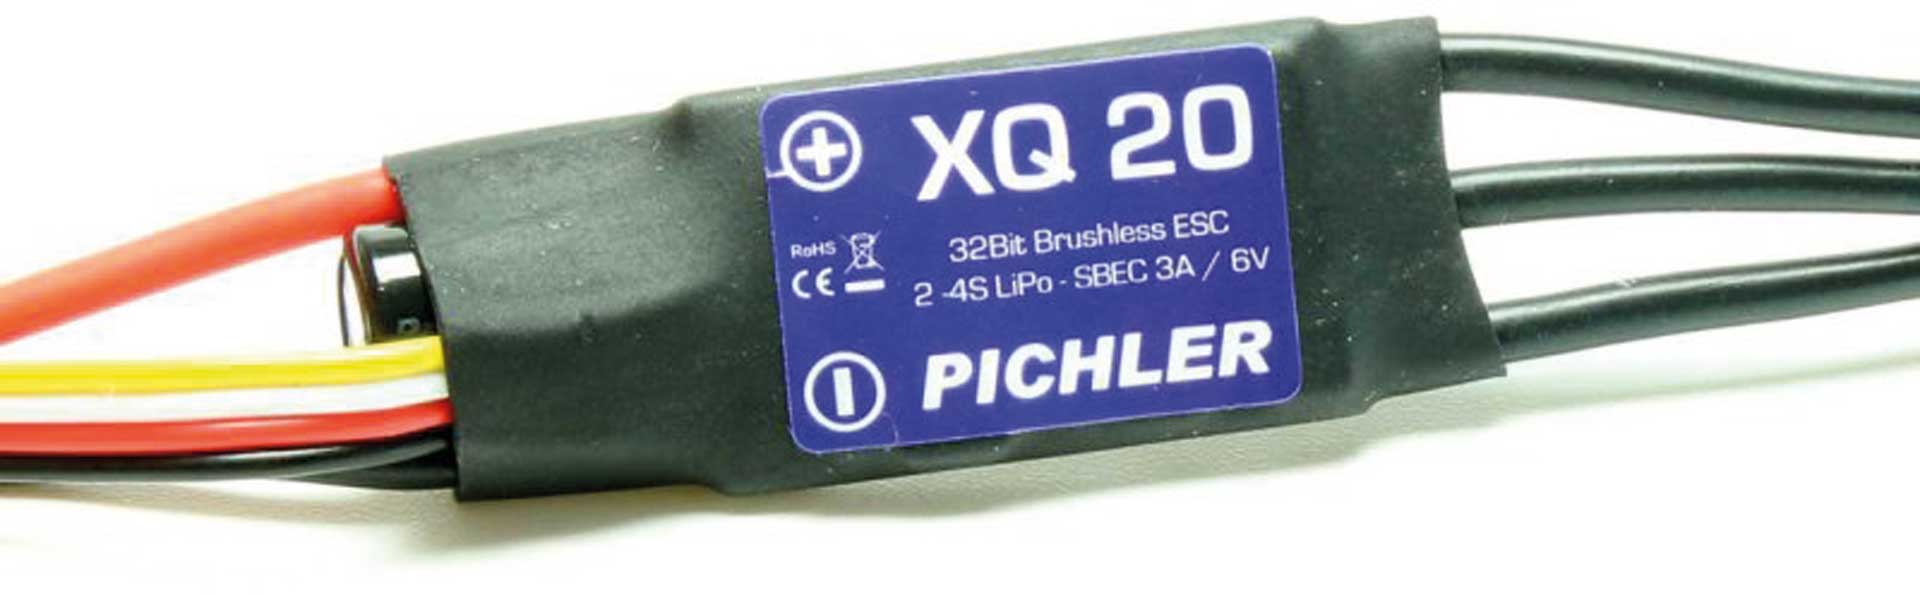 Pichler Régulateur Brushless XQ+ 20 Slim